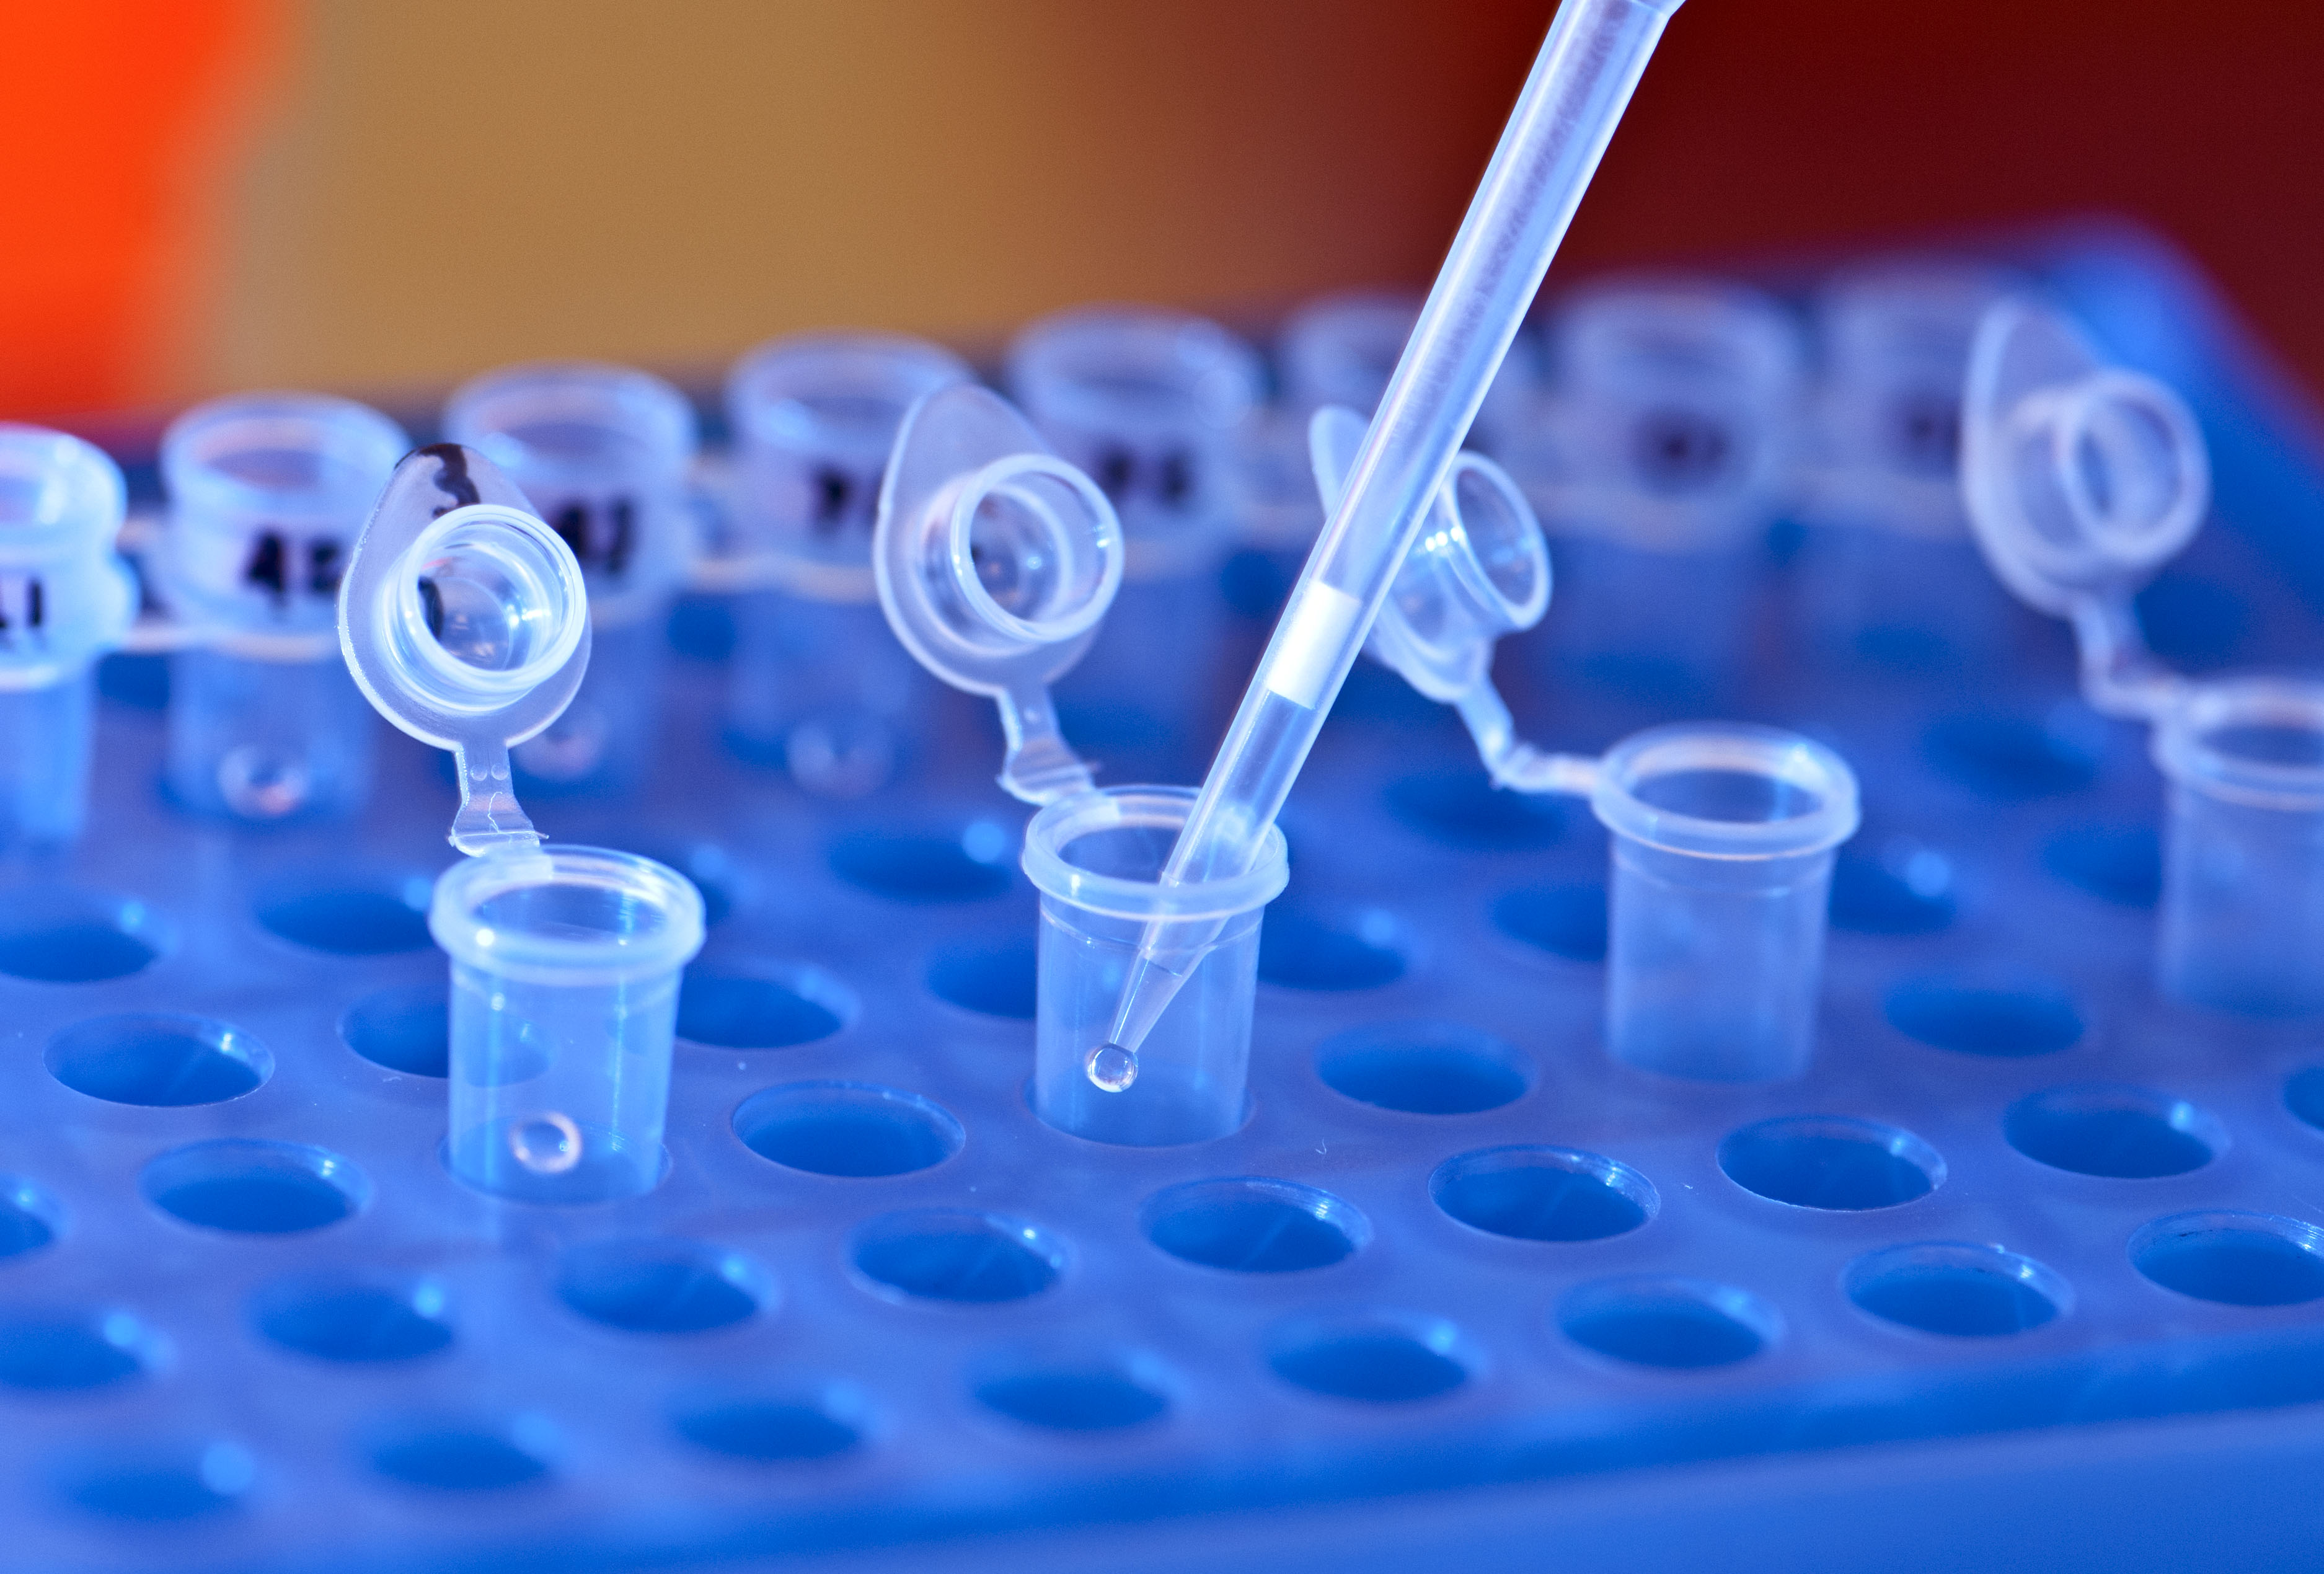 La nueva prueba genética pretende reducir en 100 órdenes de magnitud el riesgo de enfermedades hereditarias. Imagen: snre. Fuente: Flickr.